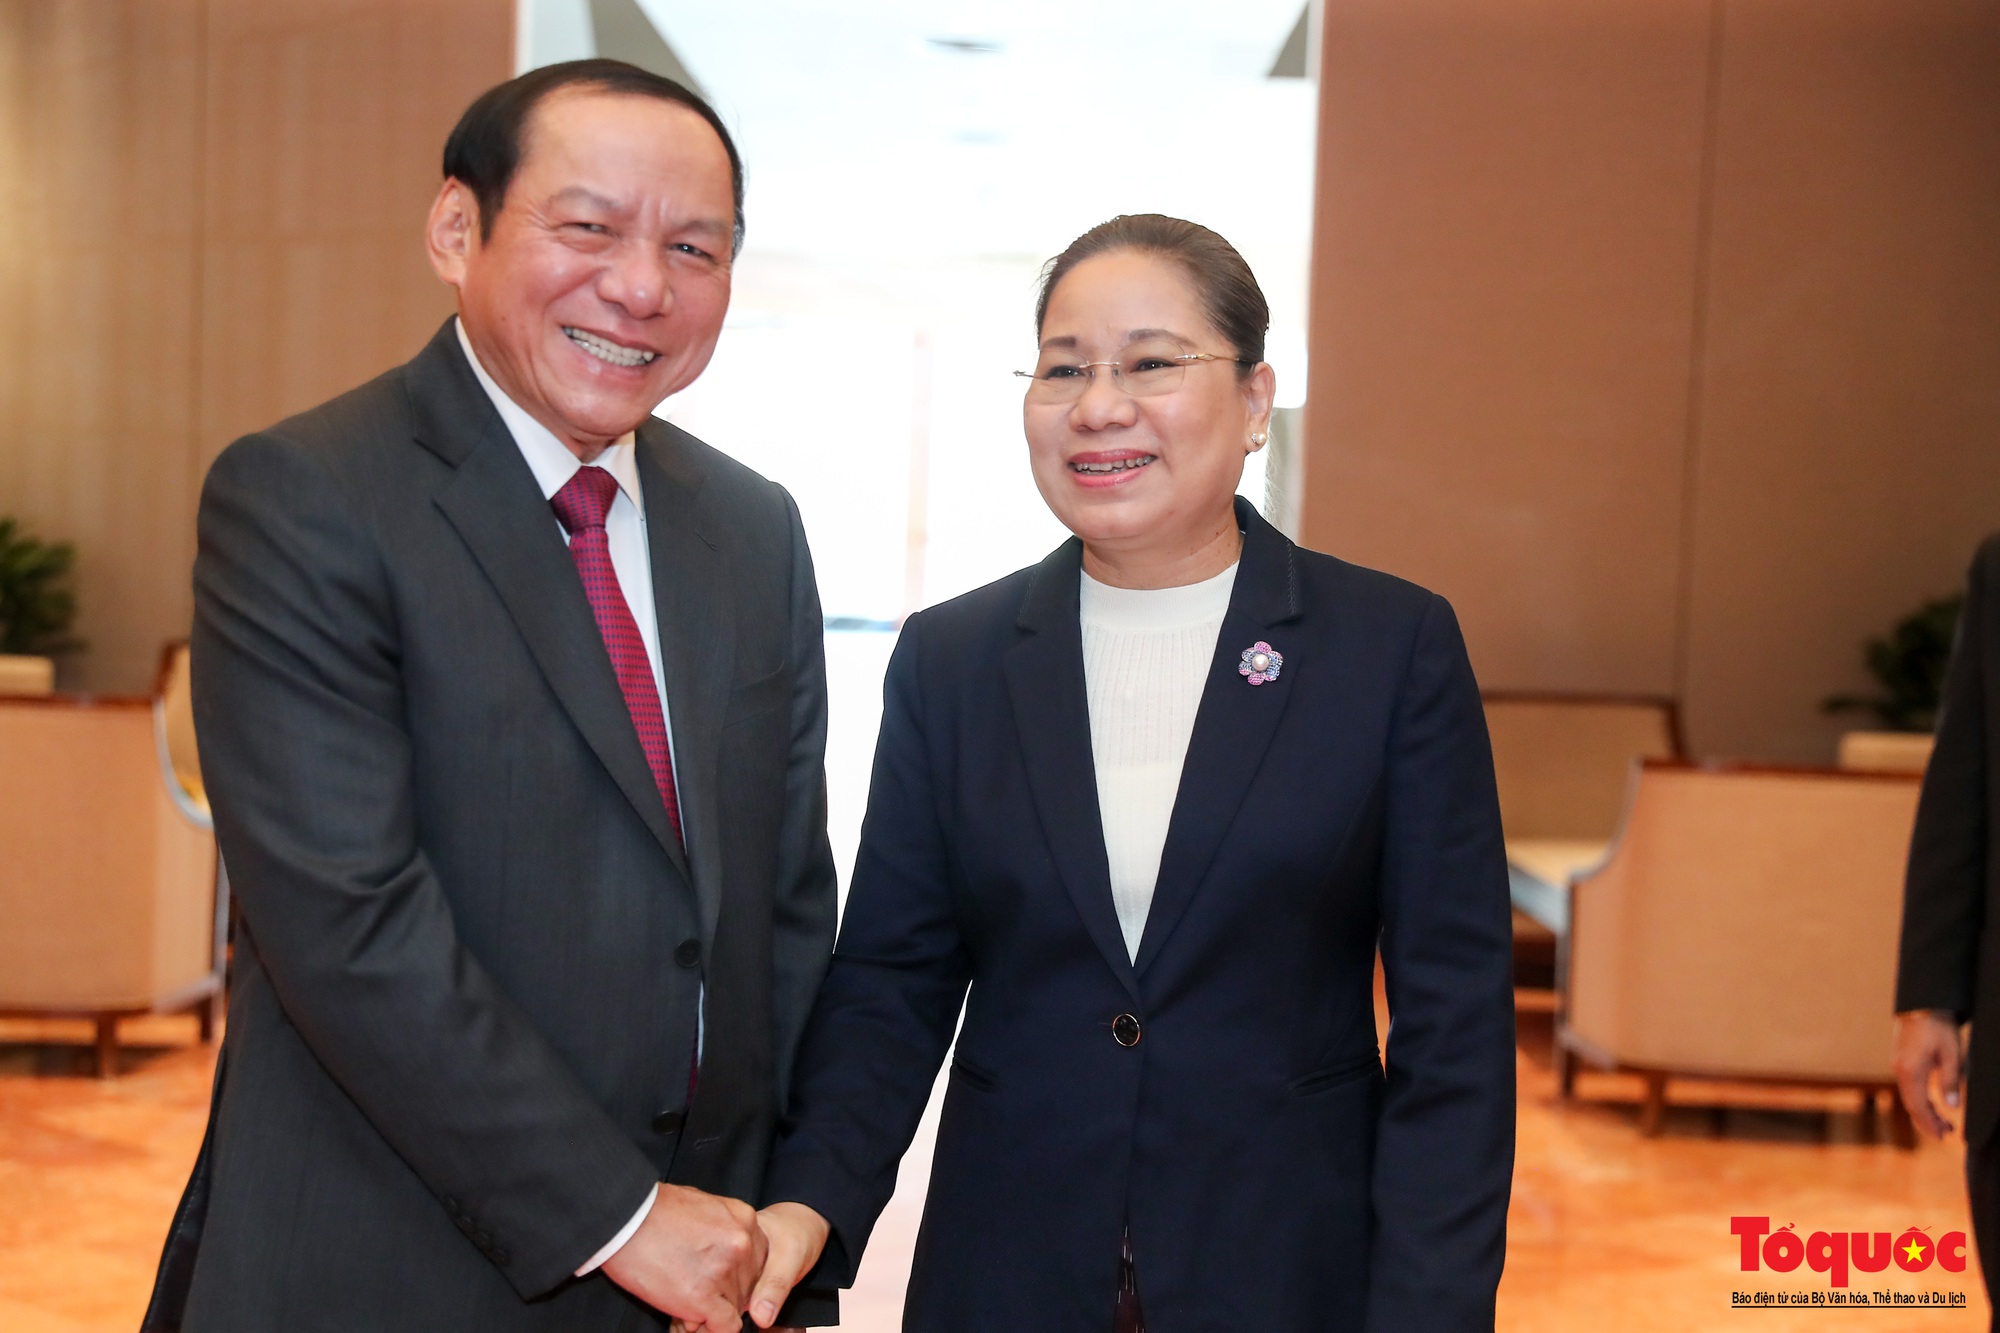 Chùm ảnh: Bộ trưởng Bộ Văn hóa, Thể thao và Du lịch Việt Nam hội đàm với Bộ trưởng Bộ Thông tin, Văn hóa và Du lịch Lào